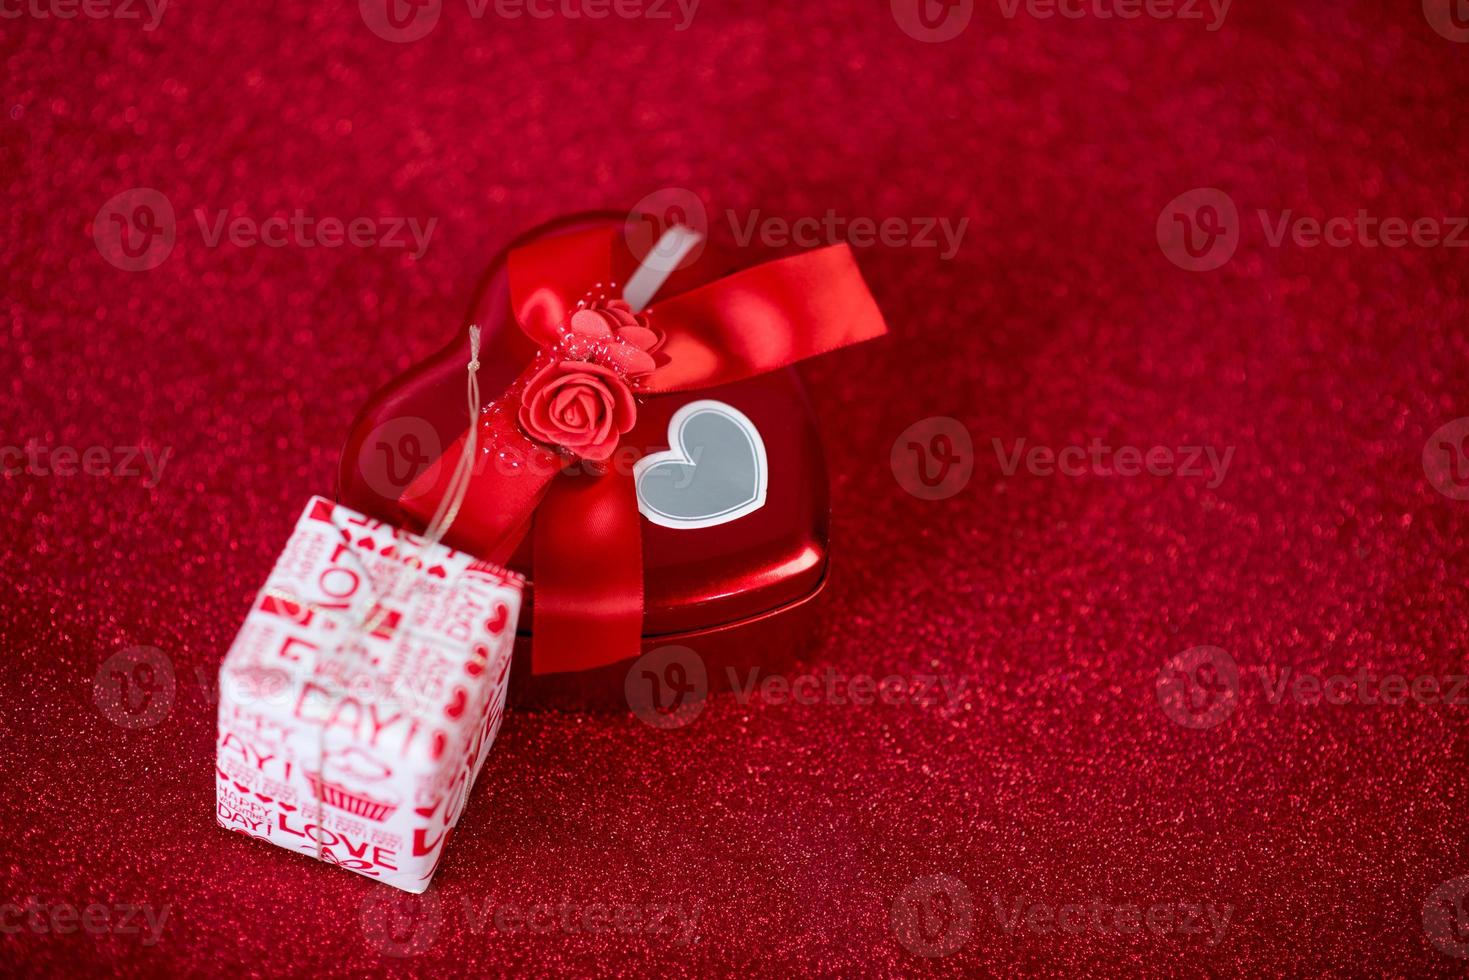 immagine di sfondo rosso e confezione regalo concetto di san valentino foto